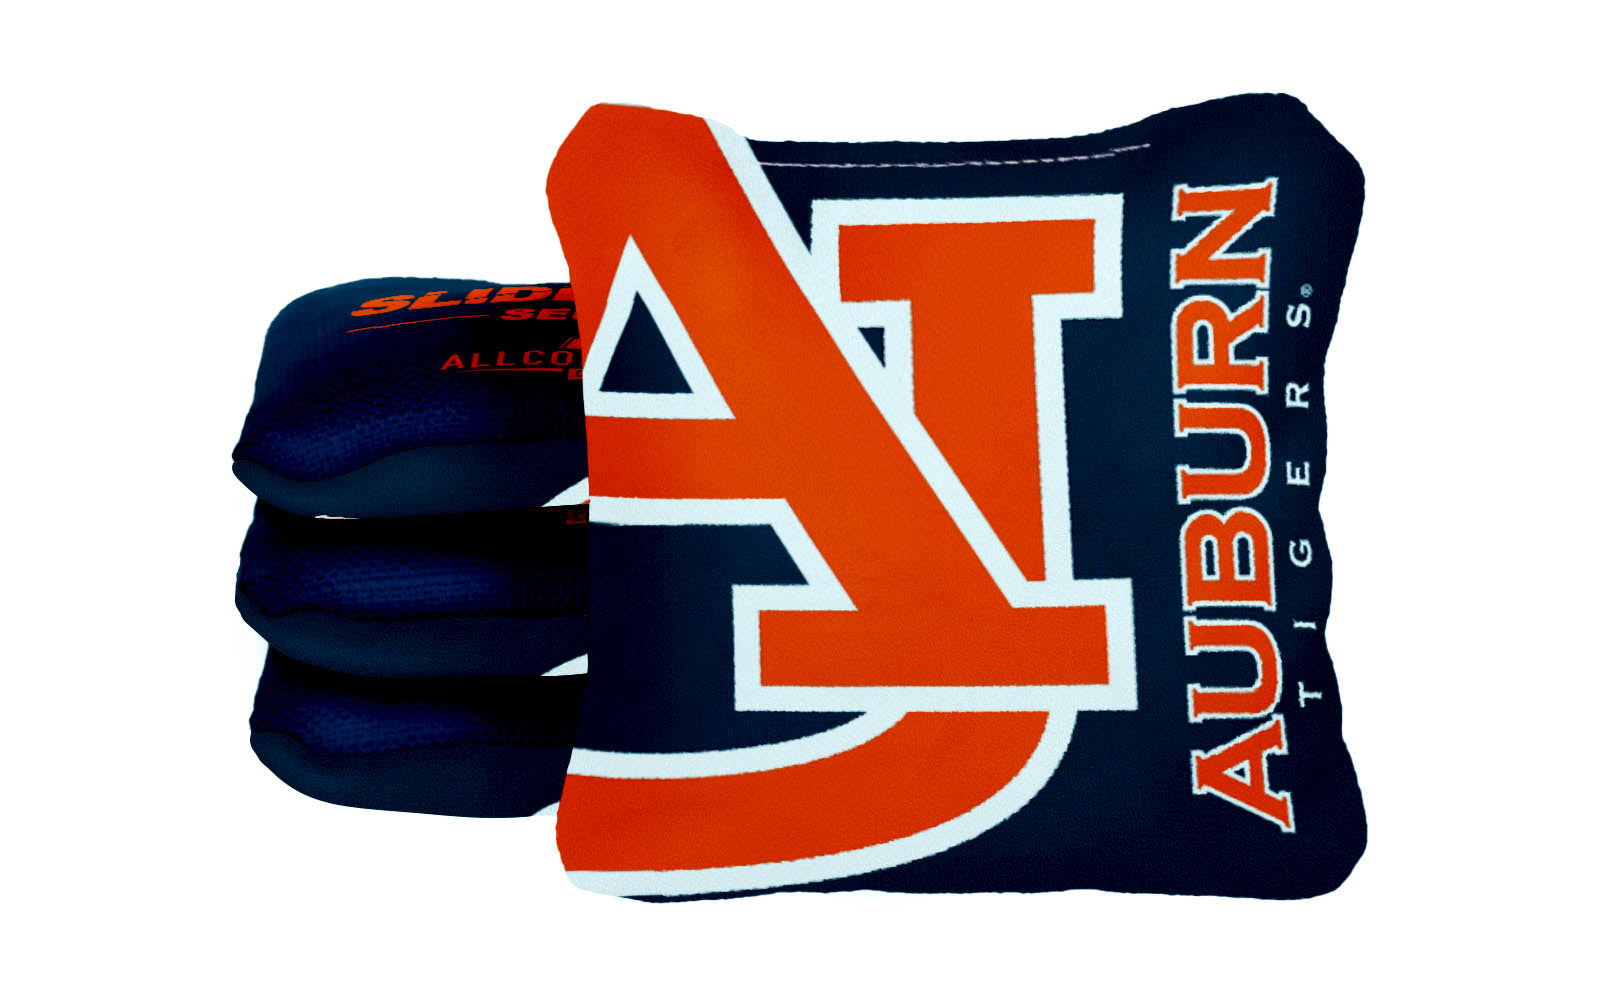 Officially Licensed Collegiate Cornhole Bags - Slide Rite - Set of 4 - Auburn University